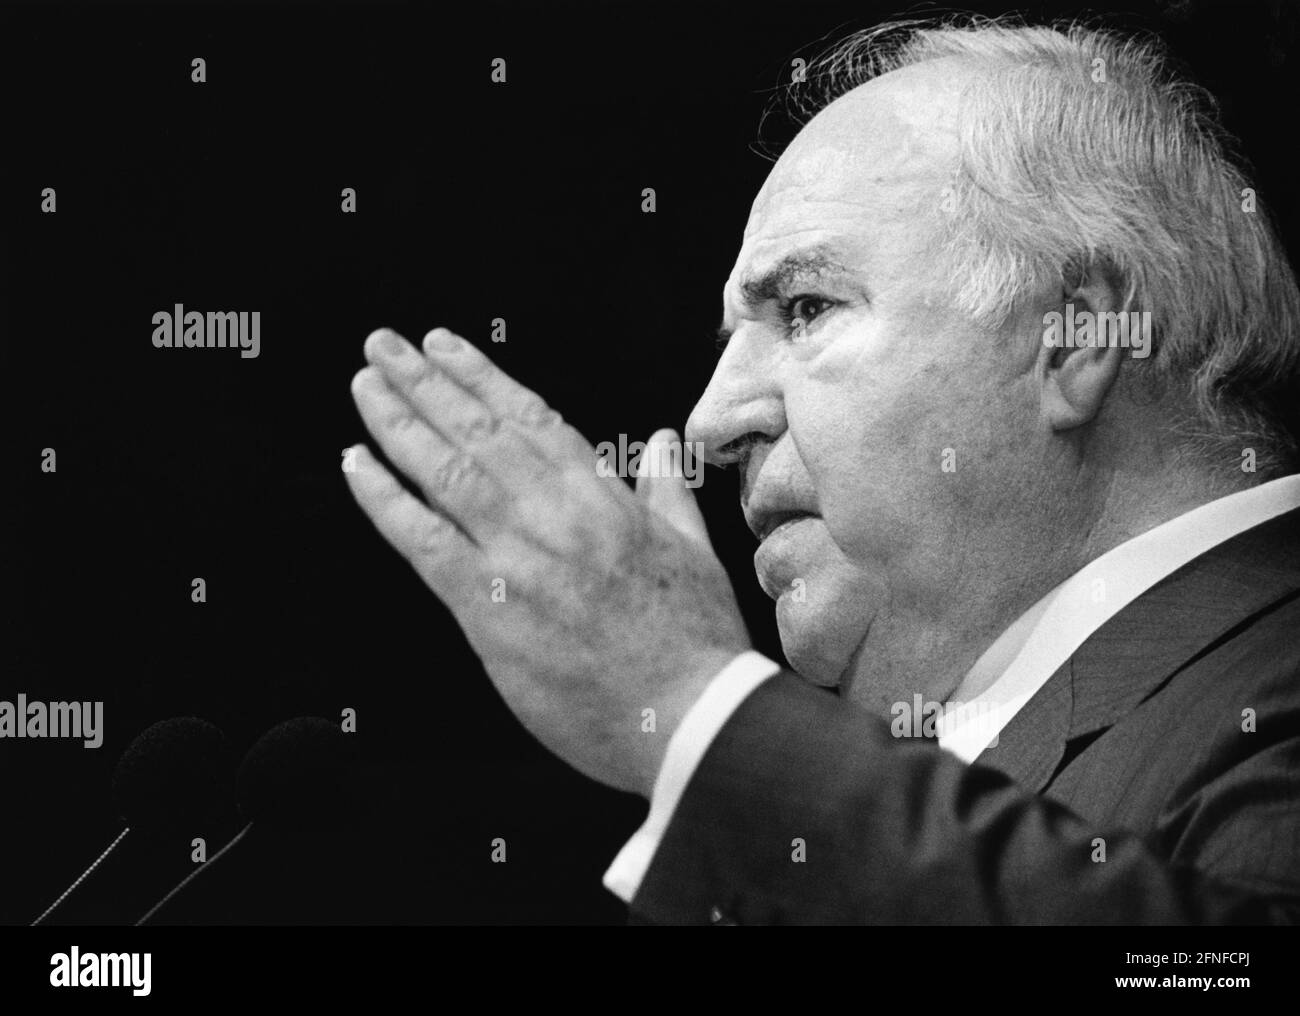 Bundeskanzler und CDU-Fraktionsvorsitzende Helmut Kohl hält zu Beginn des Landtagswahlkampfes in Niedersachsen eine Rede. [Automatisierte Übersetzung] Stockfoto